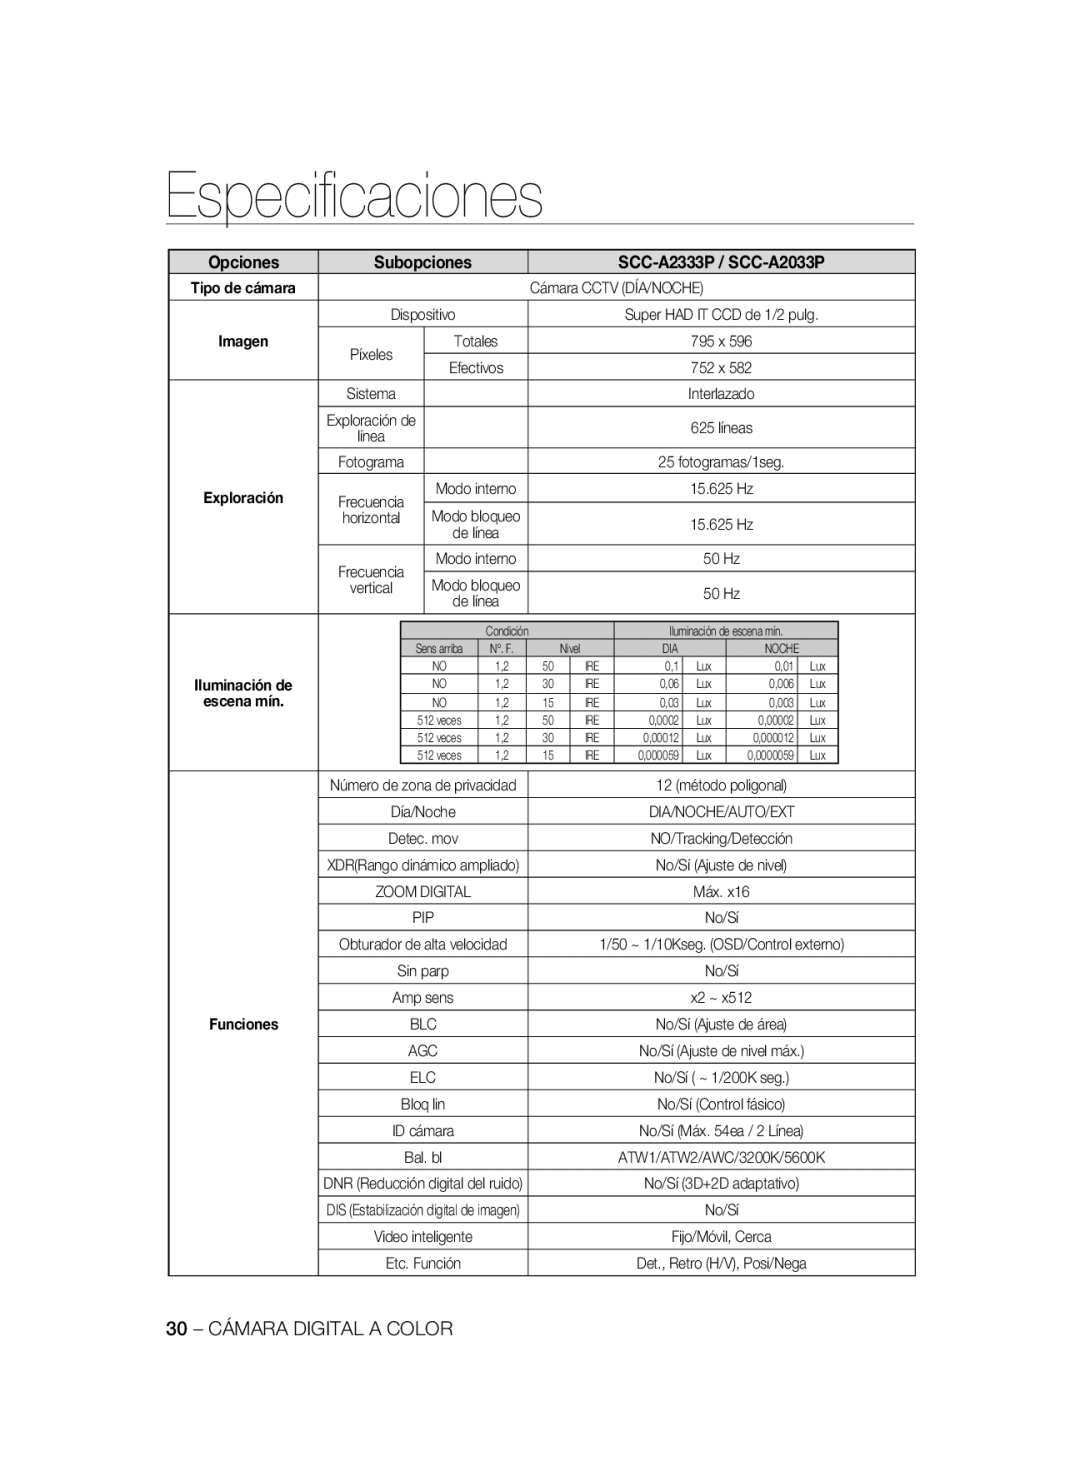 Samsung manual Especiﬁcaciones, Opciones, SCC-A2333P / SCC-A2033P, Subopciones, Imagen, escena mín 